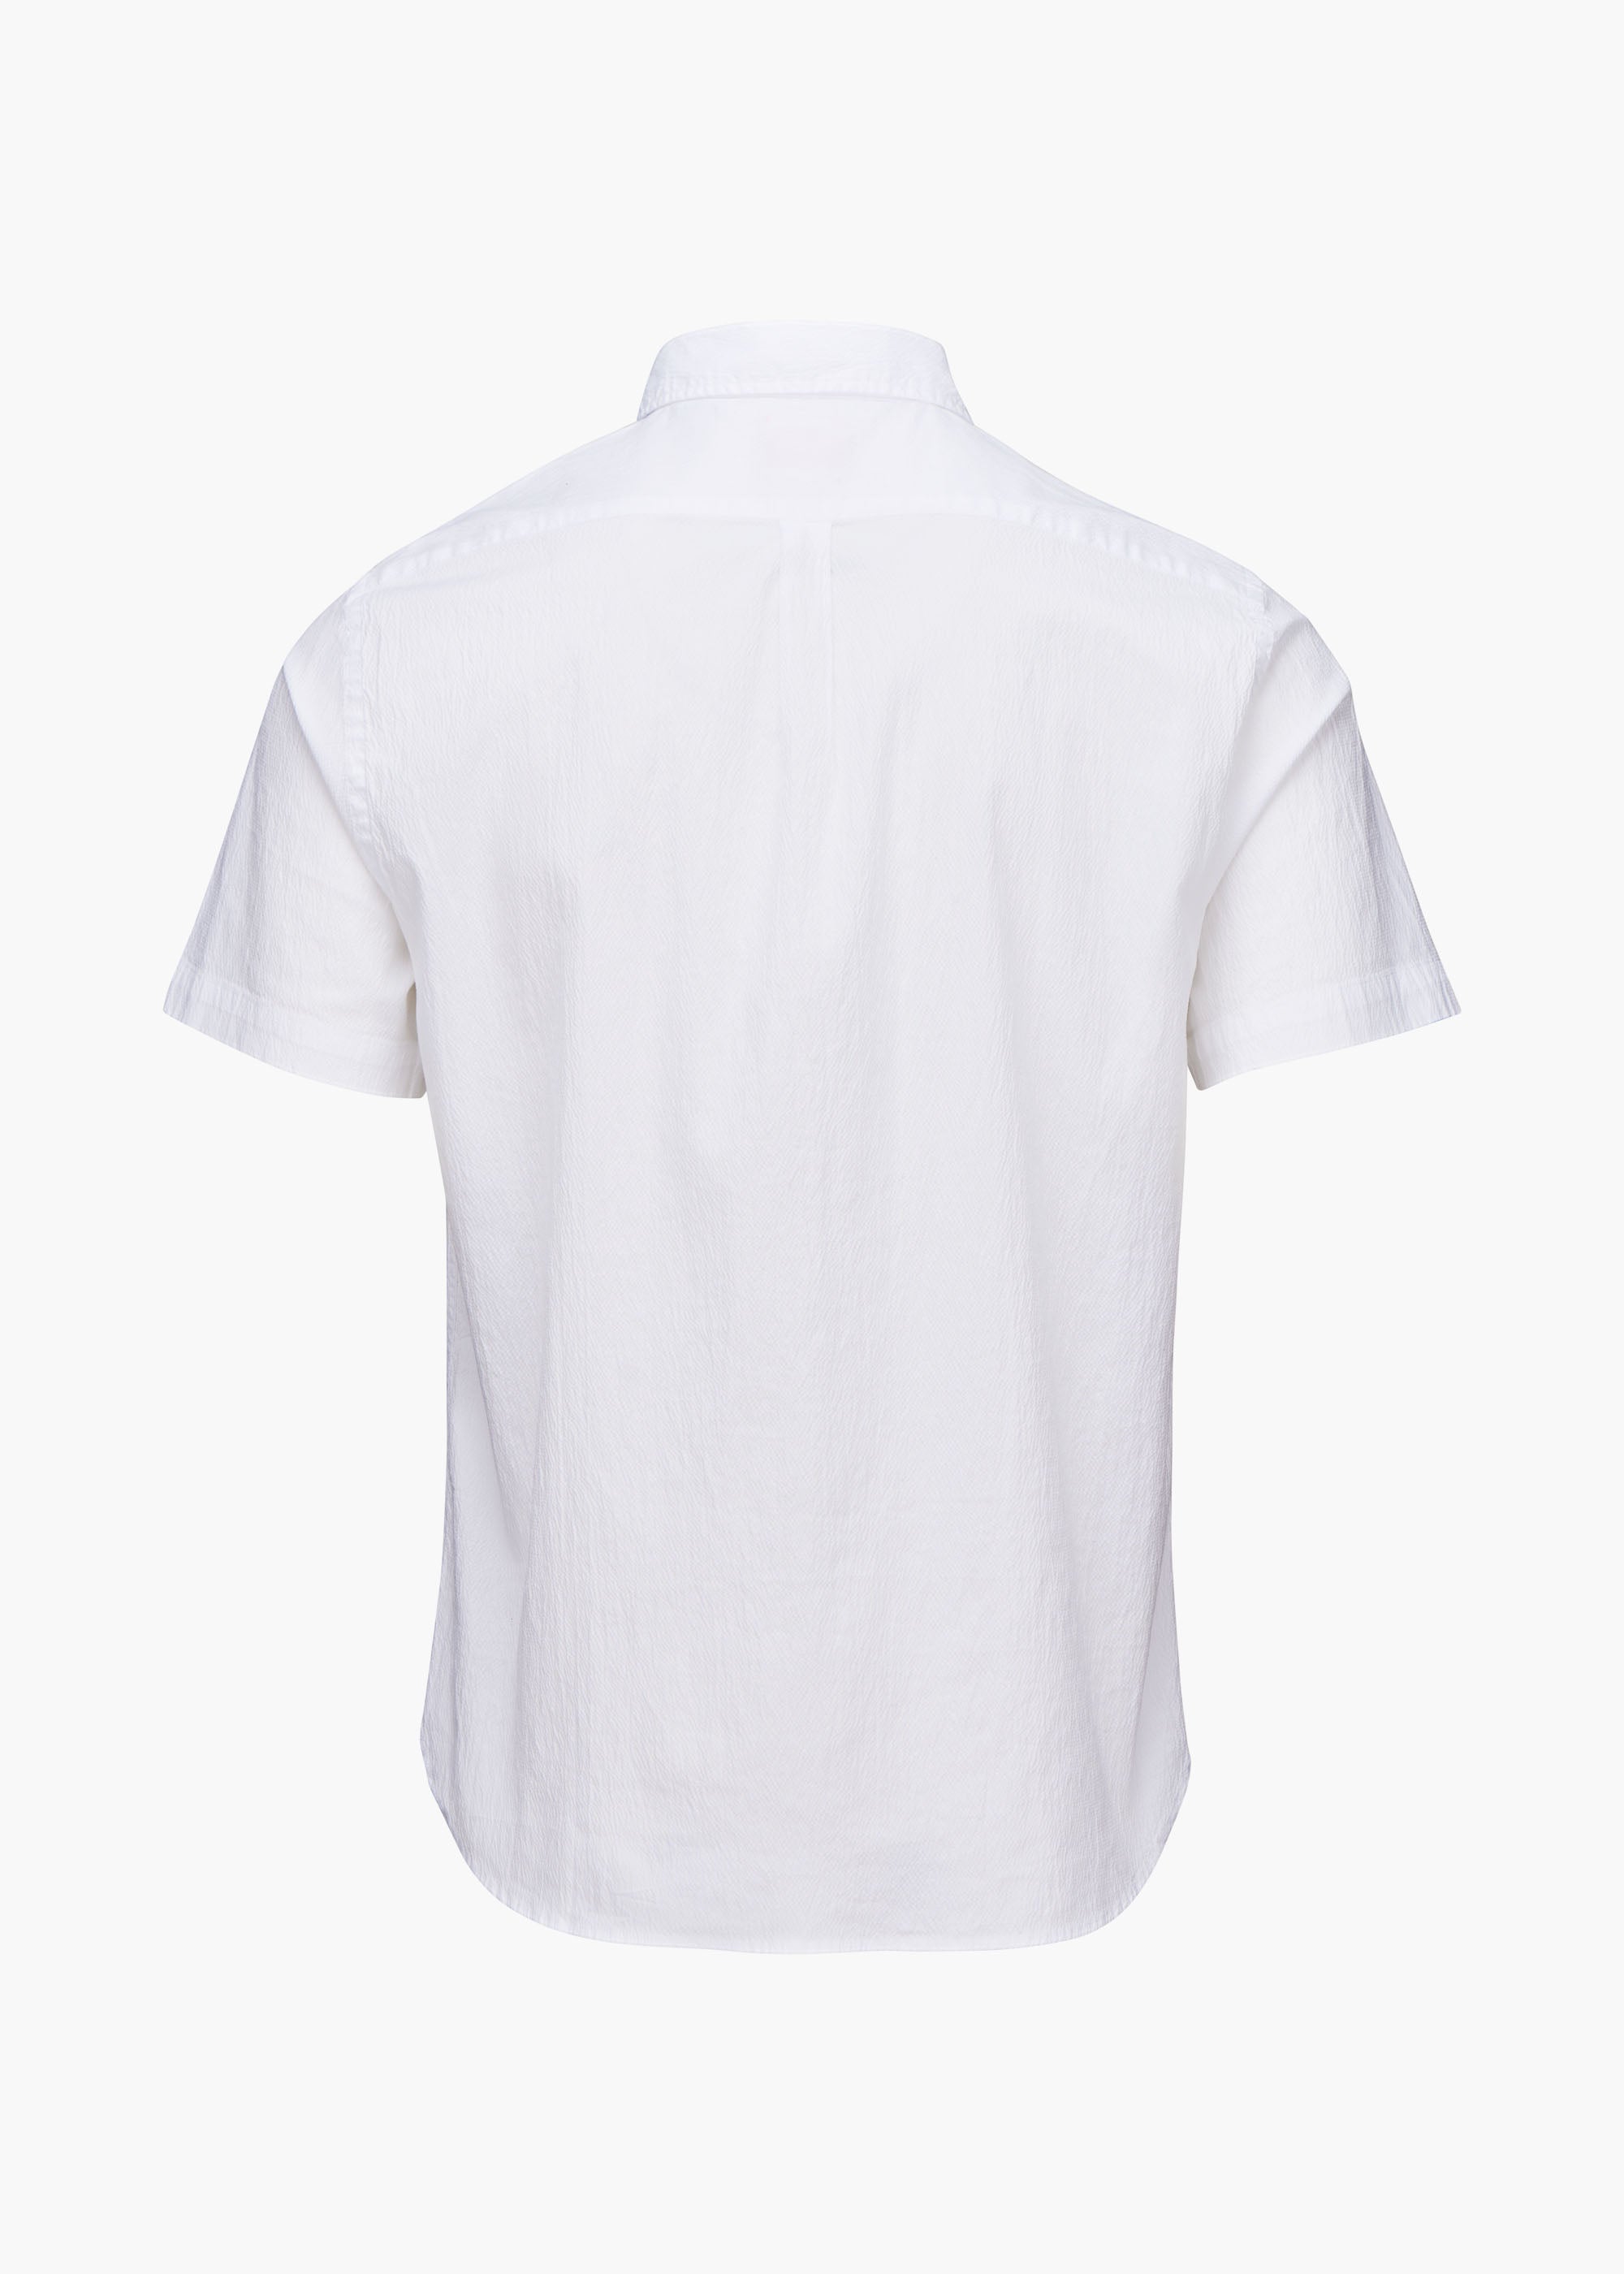 Palermo Seersucker Shirt - background::white,variant::White